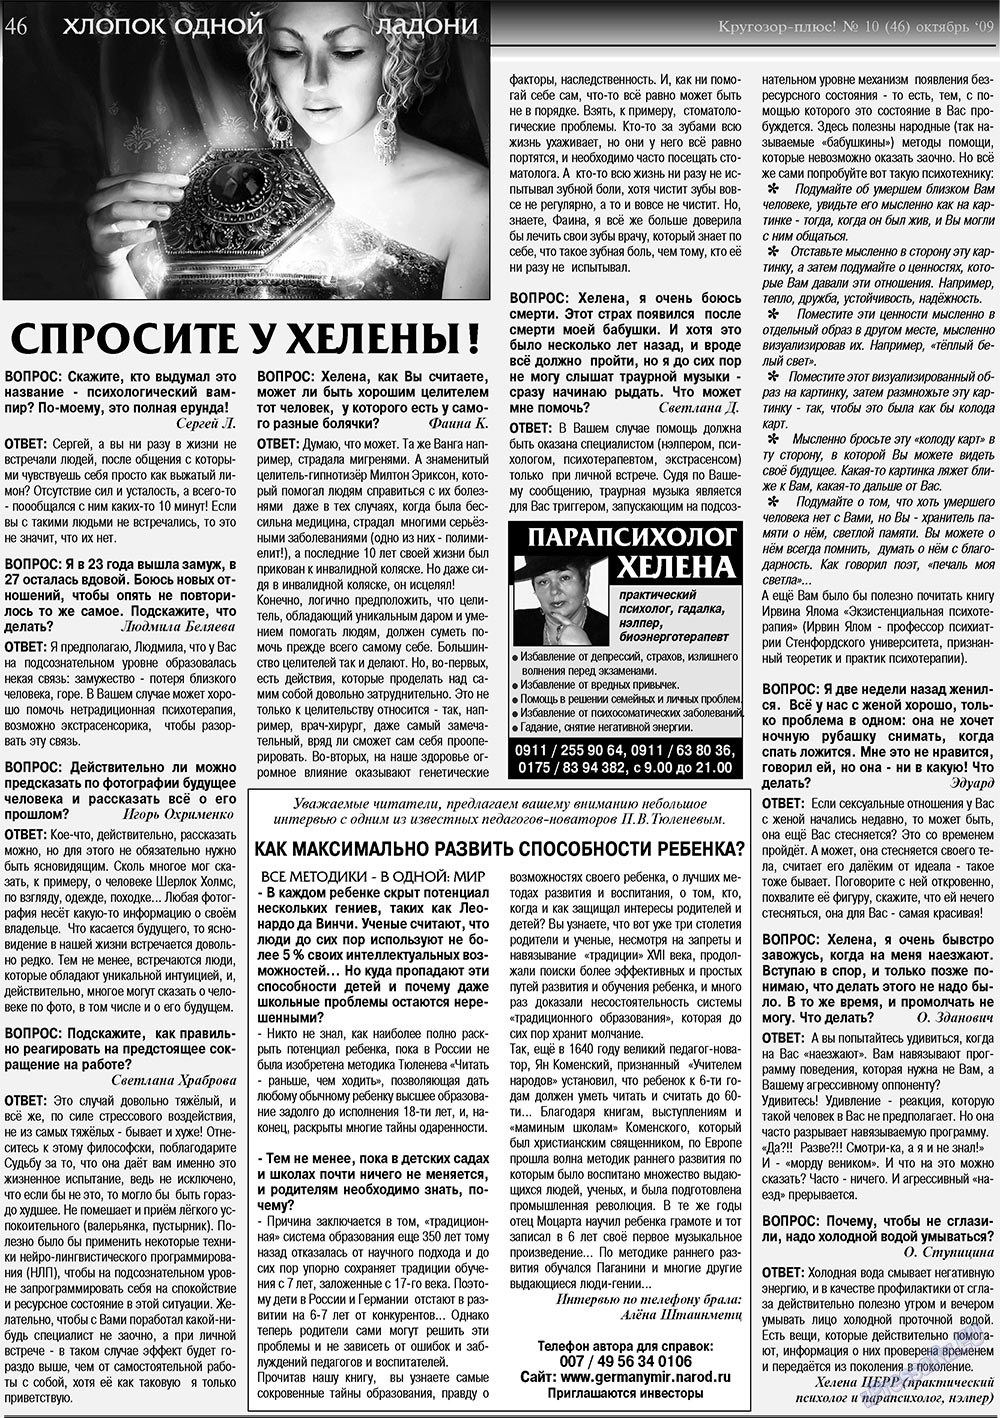 Кругозор плюс!, газета. 2009 №10 стр.46